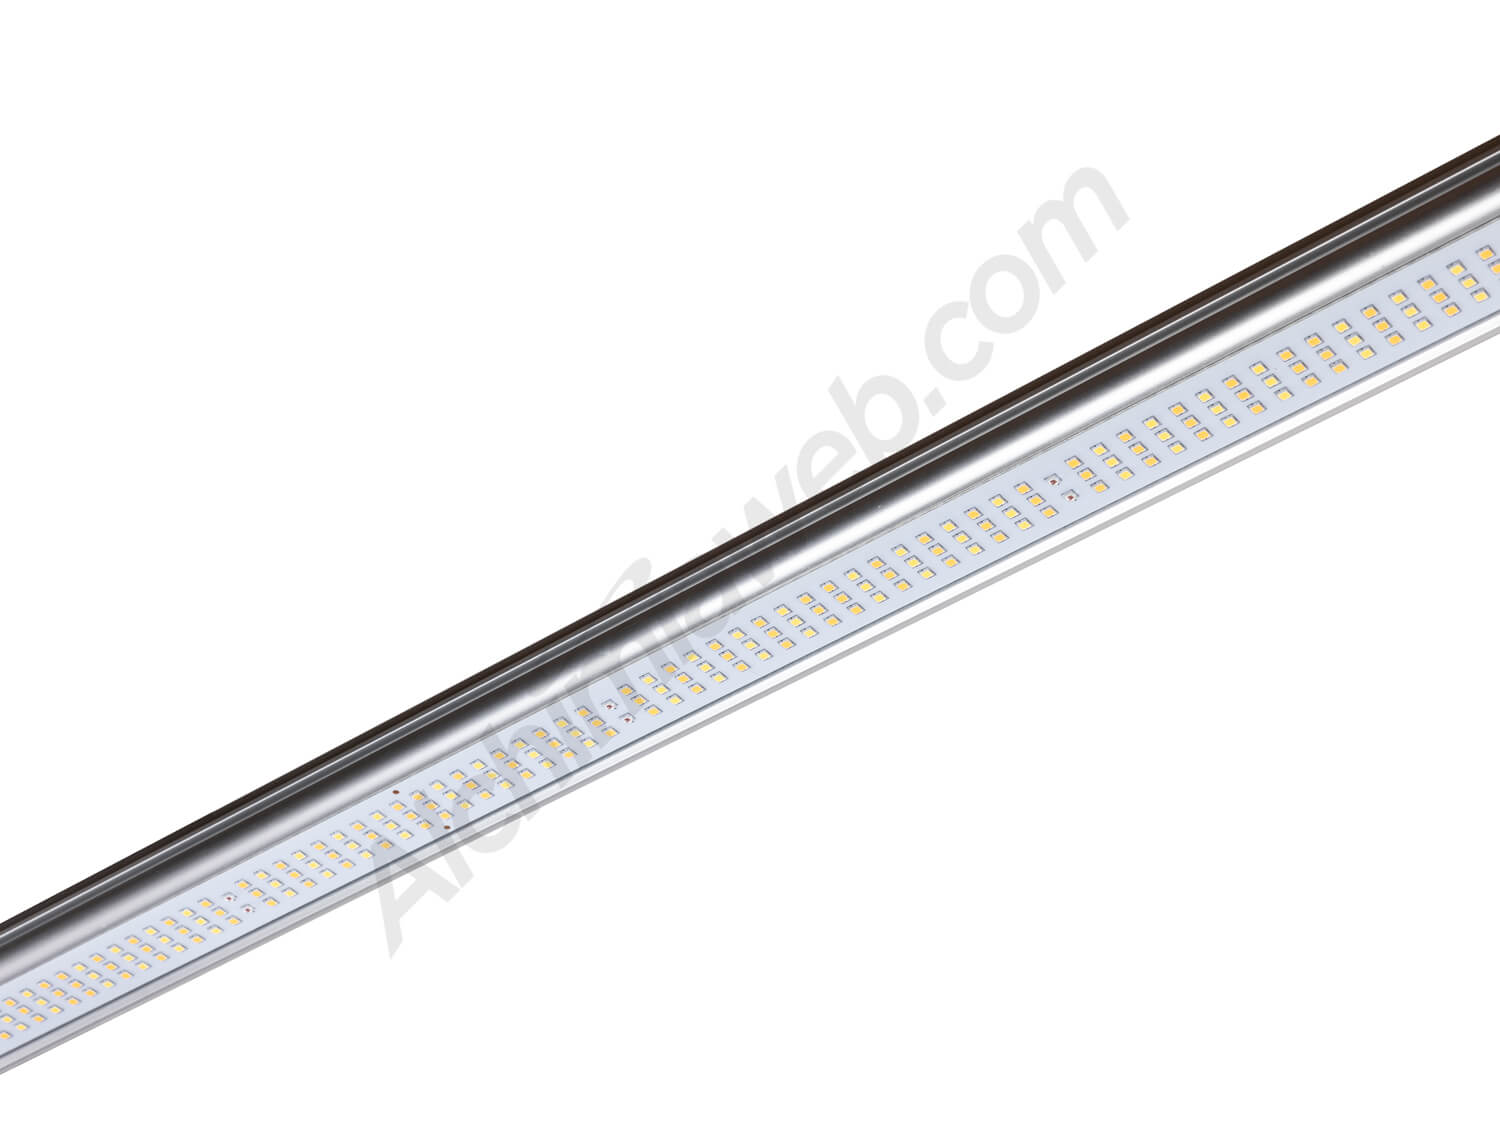 Panneau LED Black Blade 400W spectre complet LUMii - Led Horticole